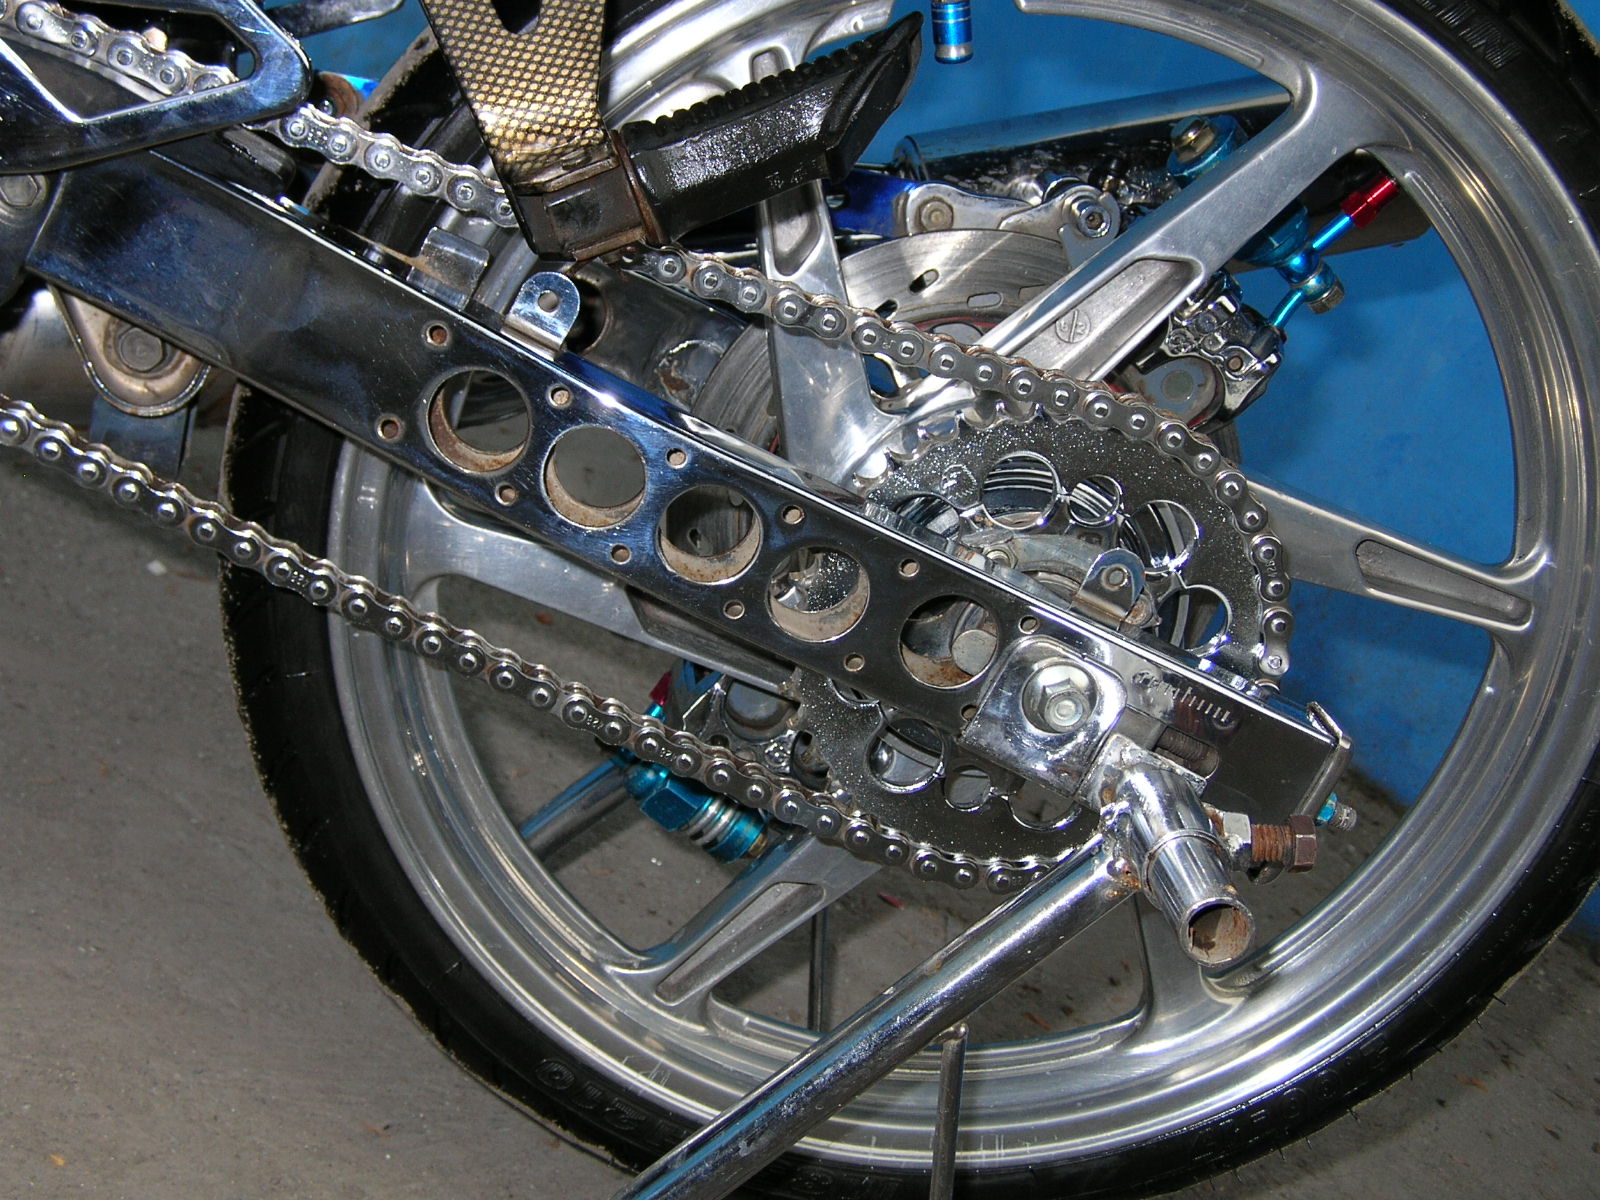 Modif suzuki satria blue color airbrush  motor modif 